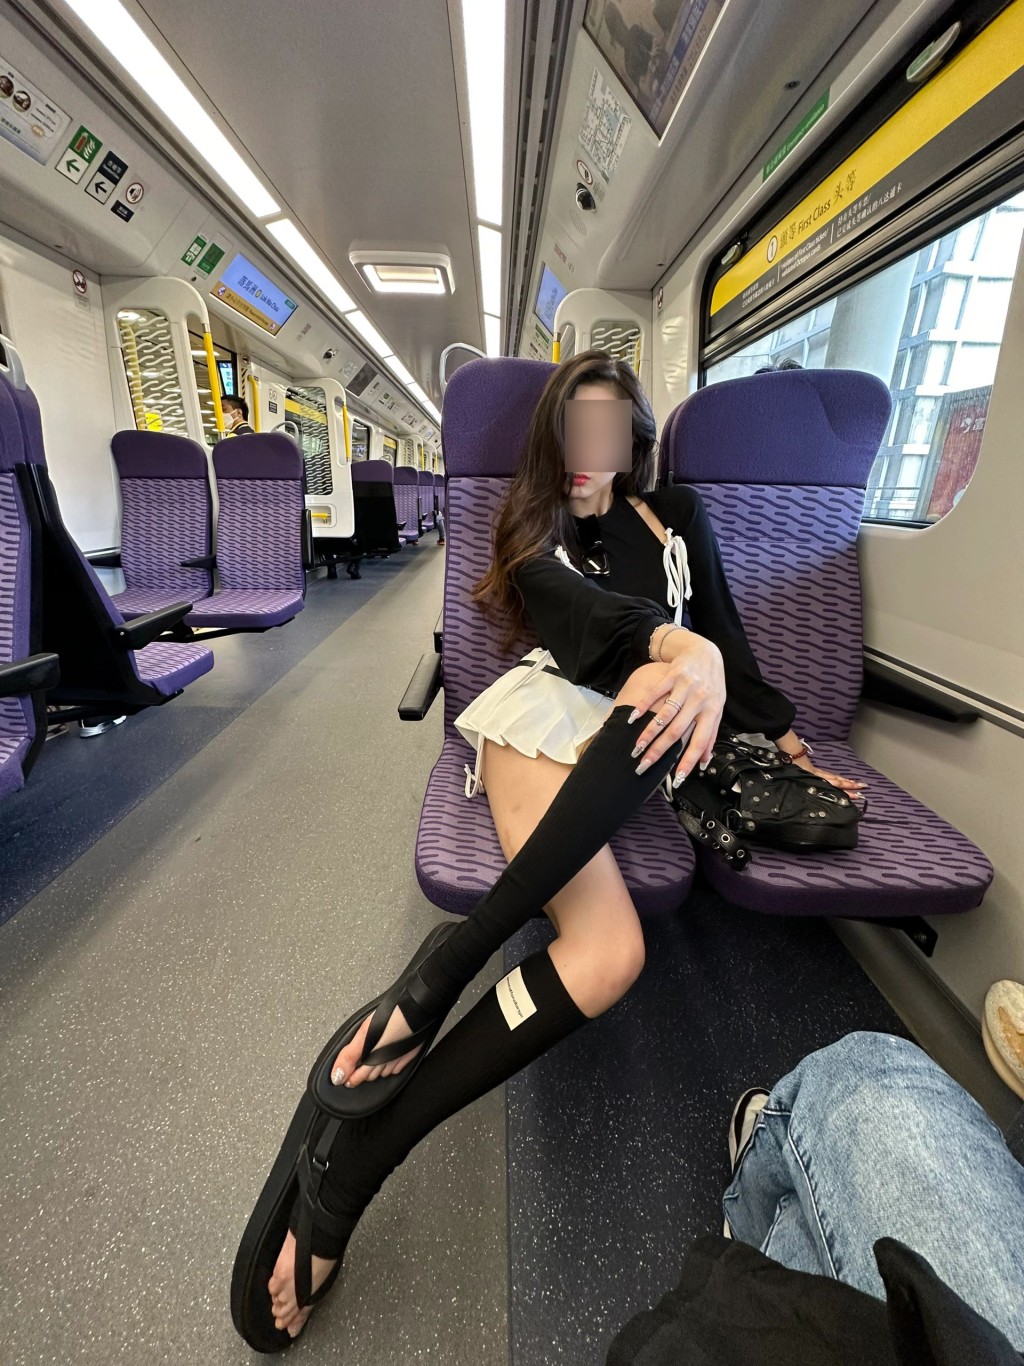 少女以「超超超短裙」在东铁头等车厢内摆出各诱人甫士。